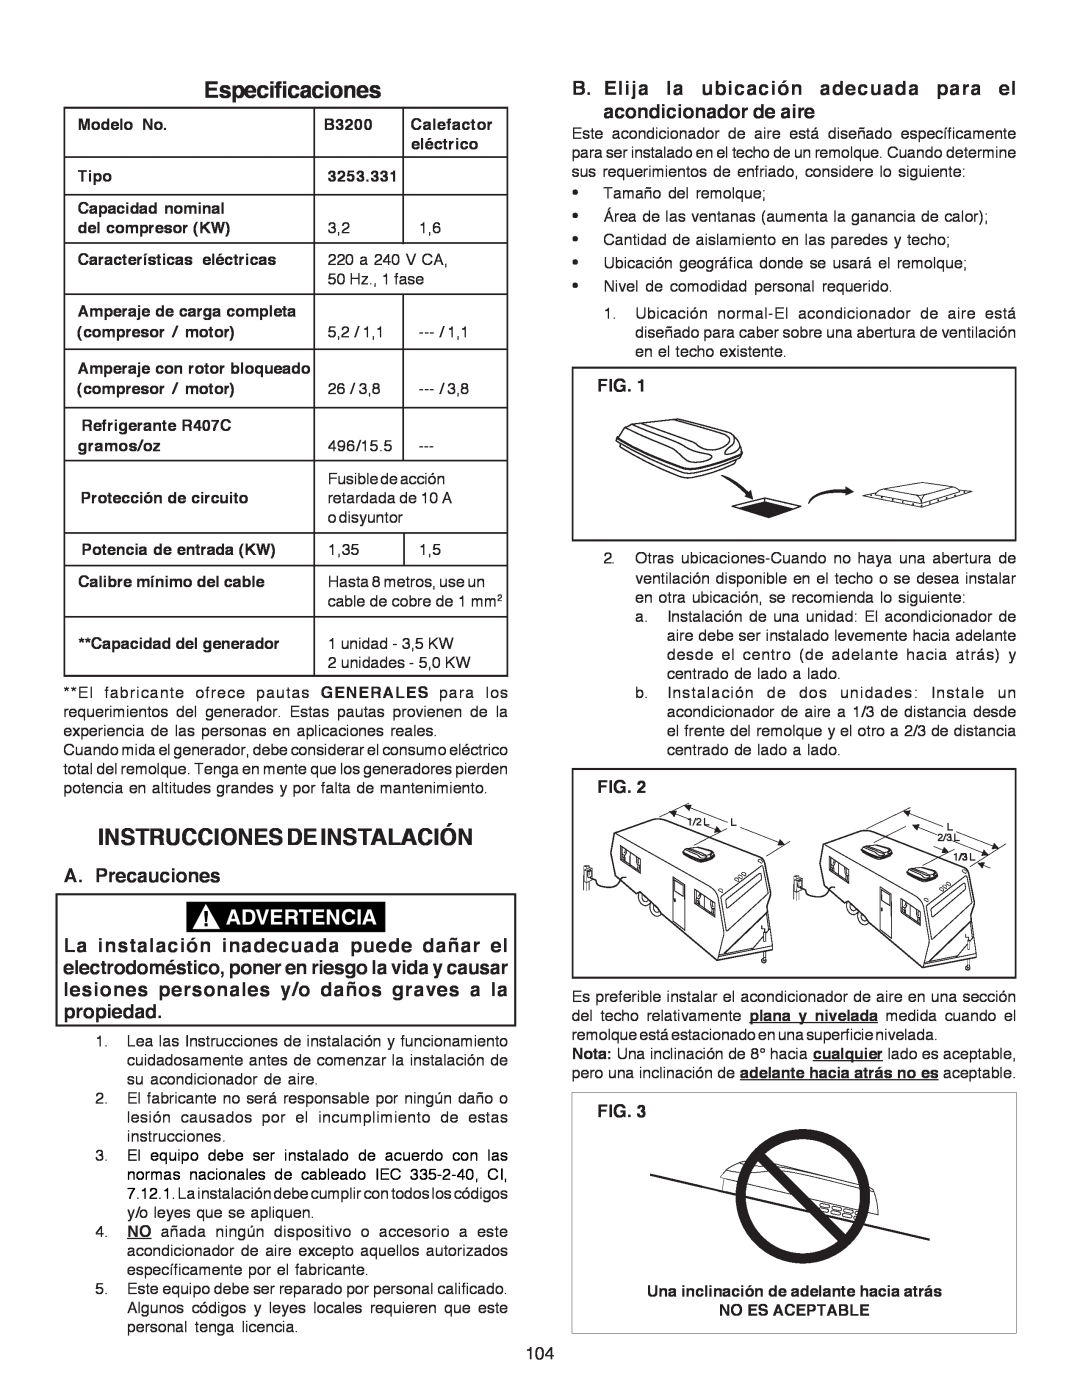 Dometic B3200 manual Especificaciones, Instruccionesdeinstalación, Advertencia, A. Precauciones 